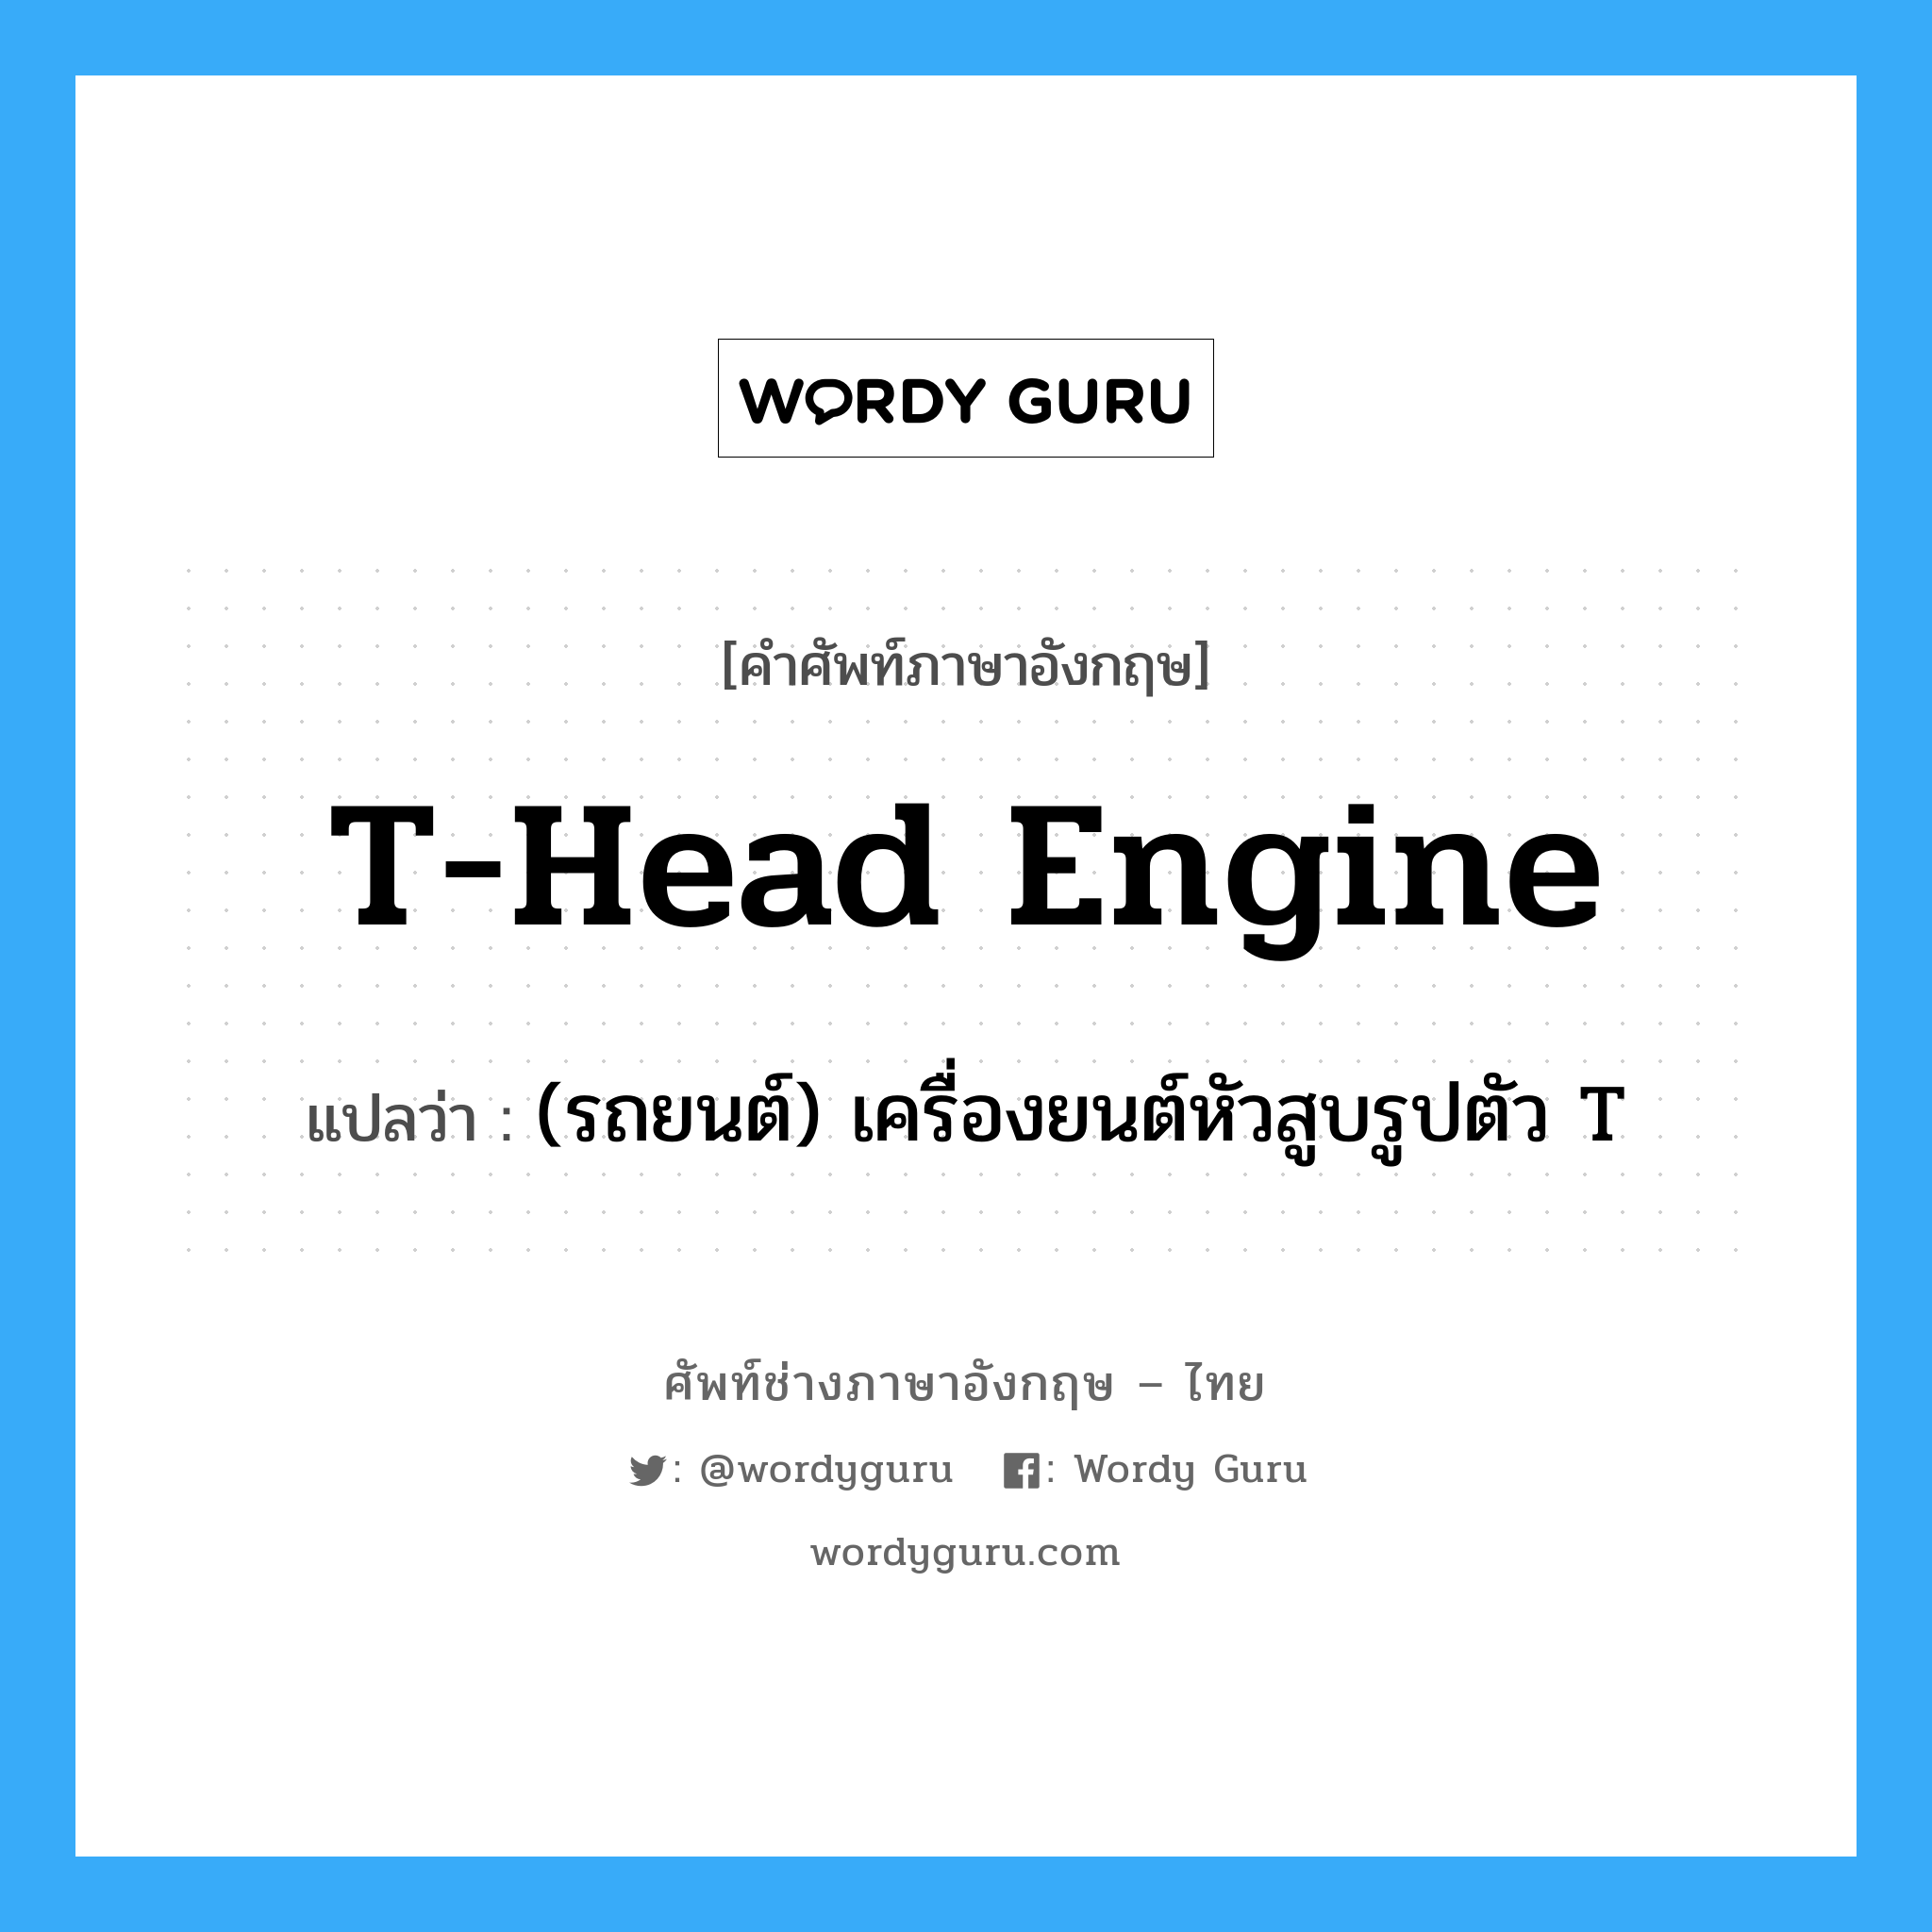 (รถยนต์) เครื่องยนต์หัวสูบรูปตัว T ภาษาอังกฤษ?, คำศัพท์ช่างภาษาอังกฤษ - ไทย (รถยนต์) เครื่องยนต์หัวสูบรูปตัว T คำศัพท์ภาษาอังกฤษ (รถยนต์) เครื่องยนต์หัวสูบรูปตัว T แปลว่า T-head engine